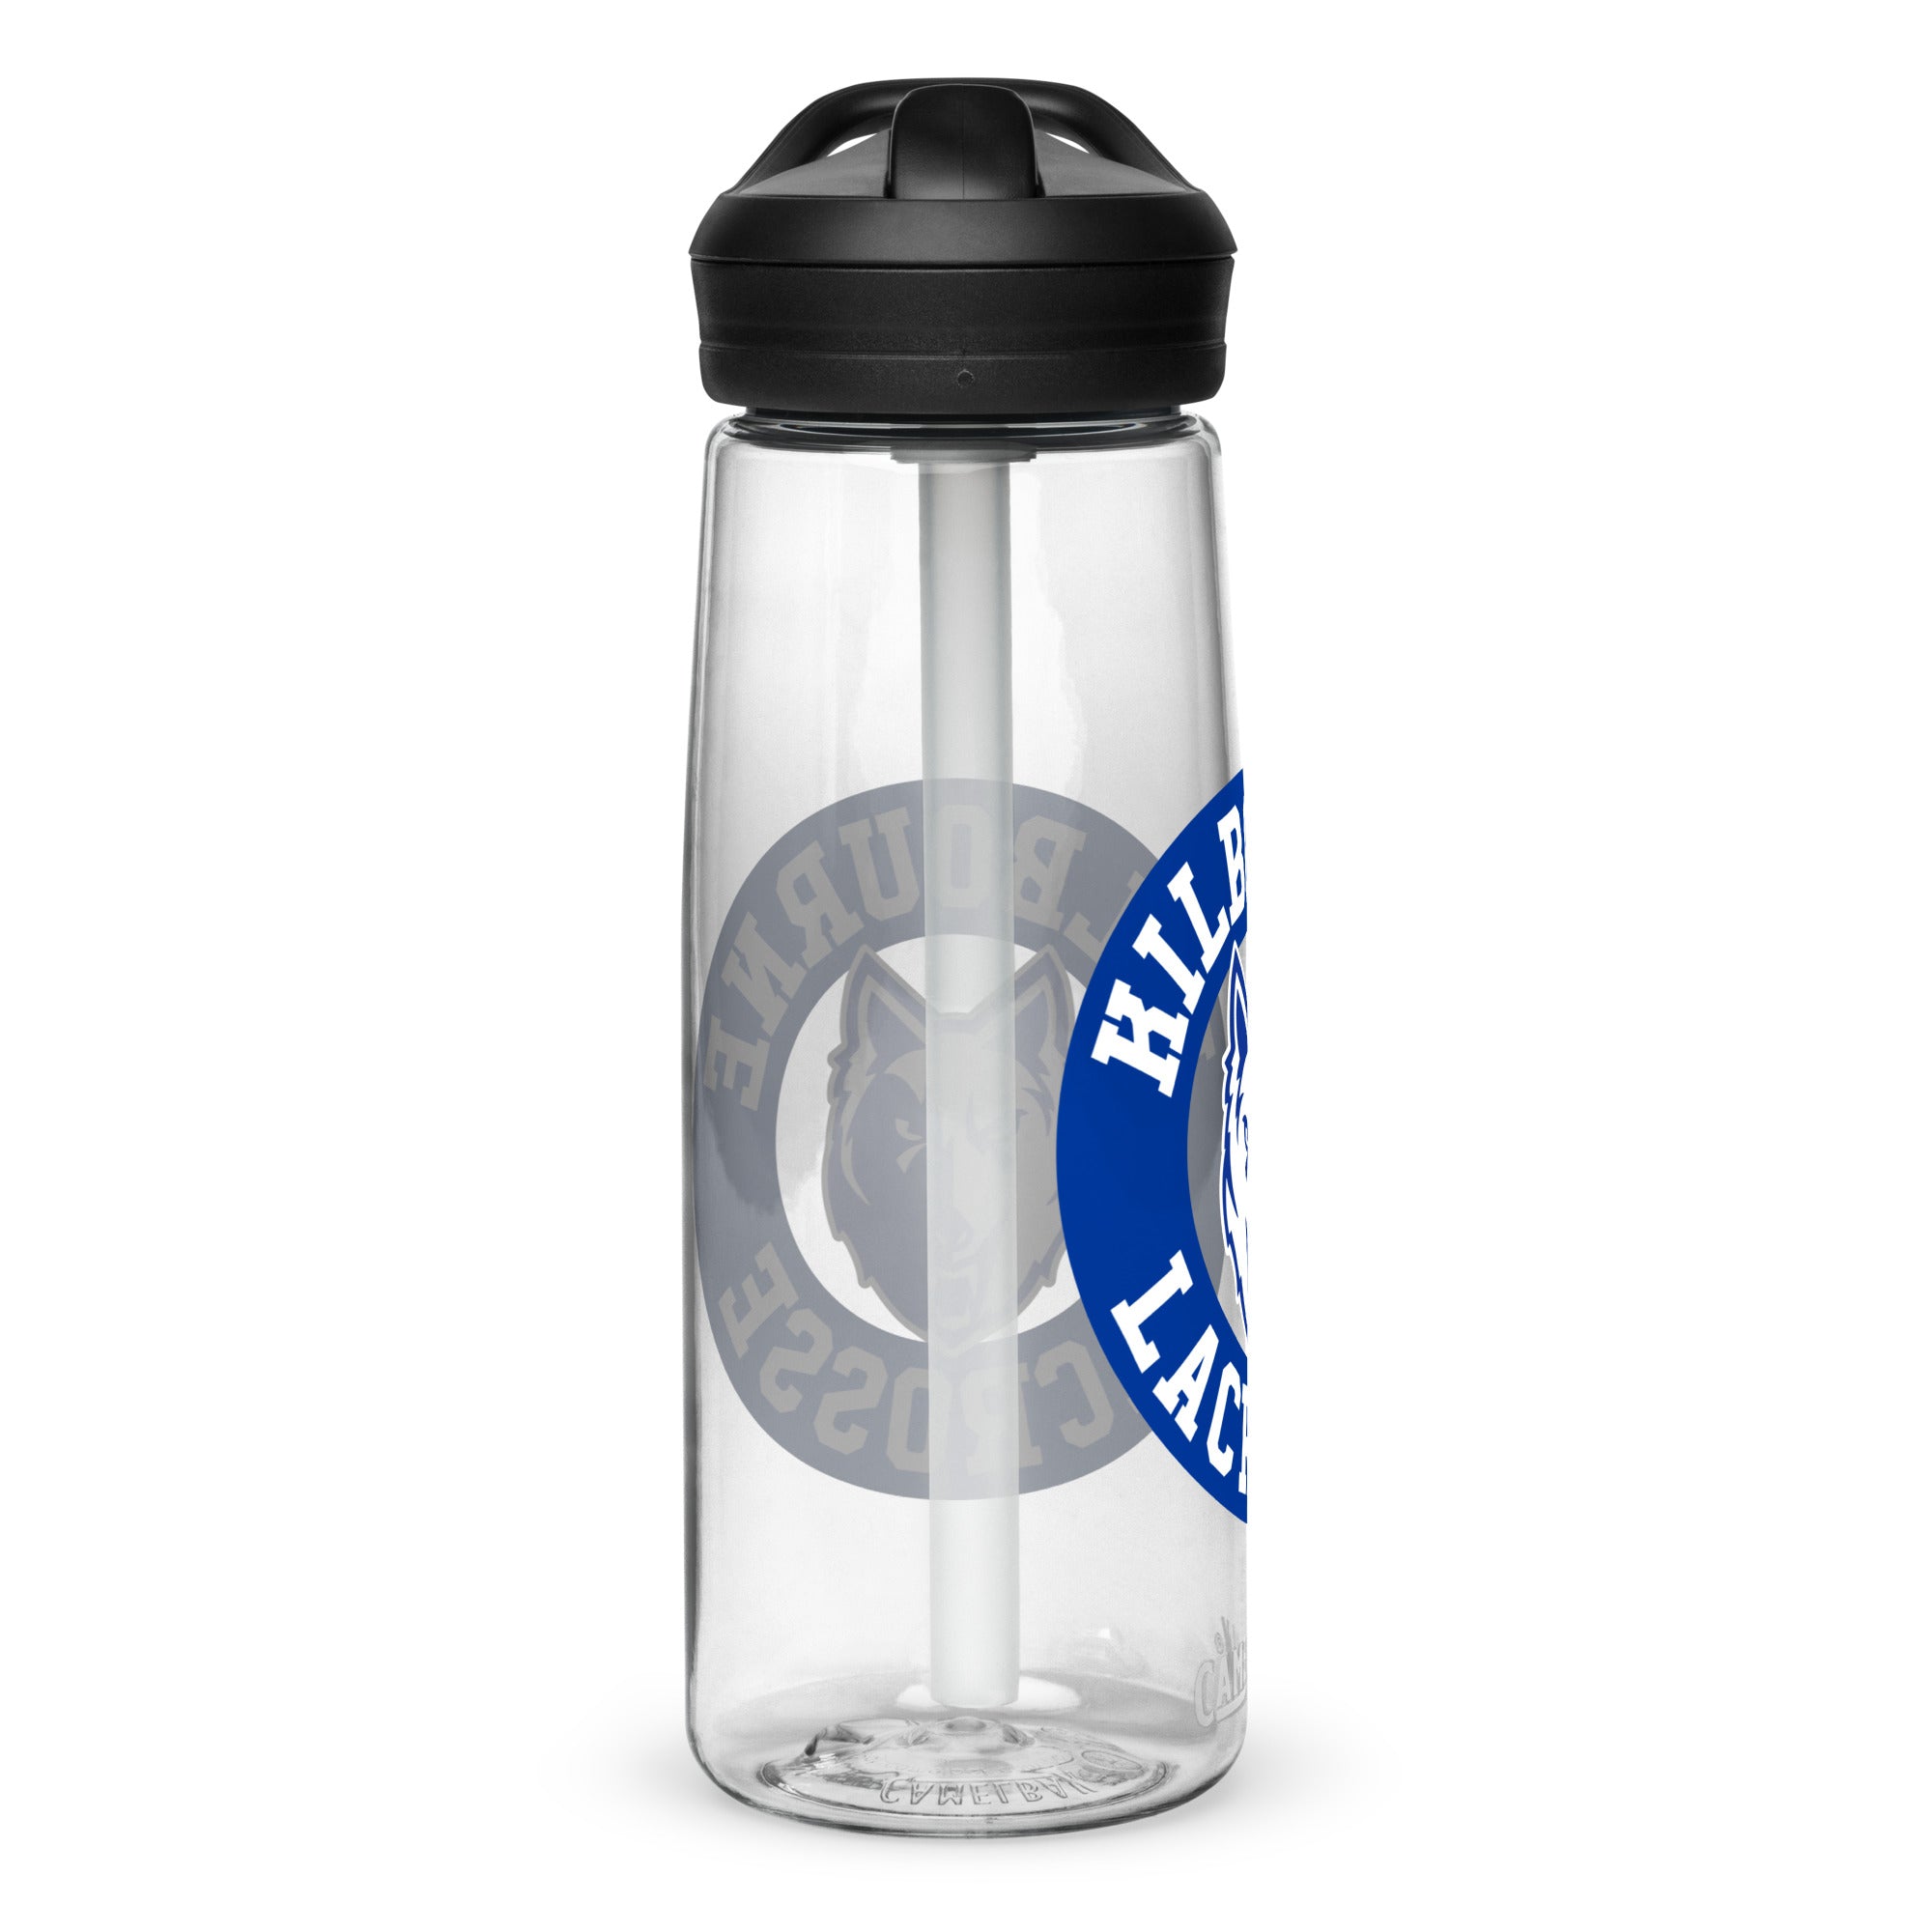 WK Sports water bottle